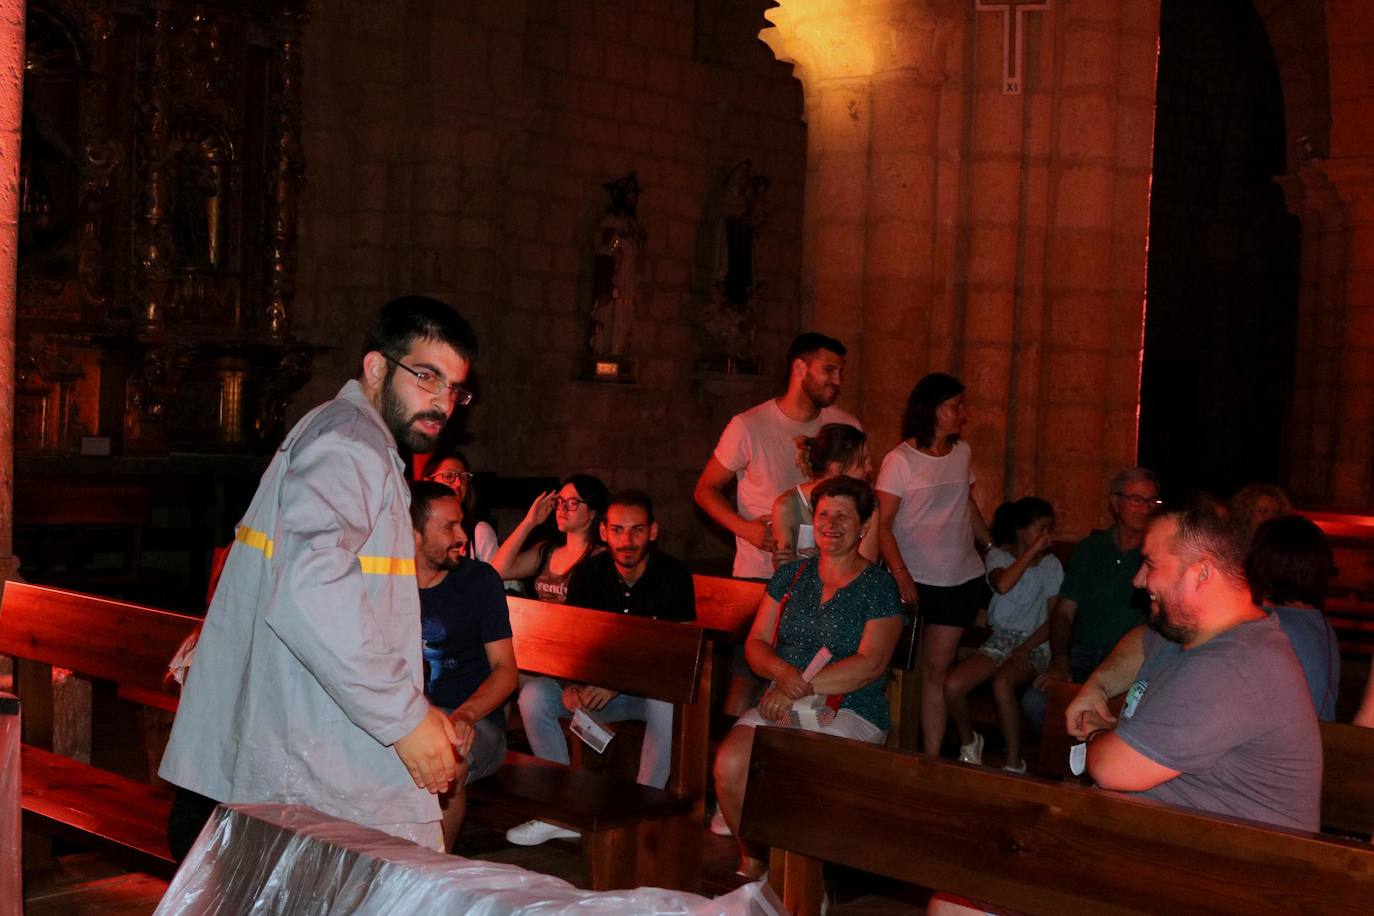 Fotos: Visita nocturna a la iglesia de Santa Maria la Mayor